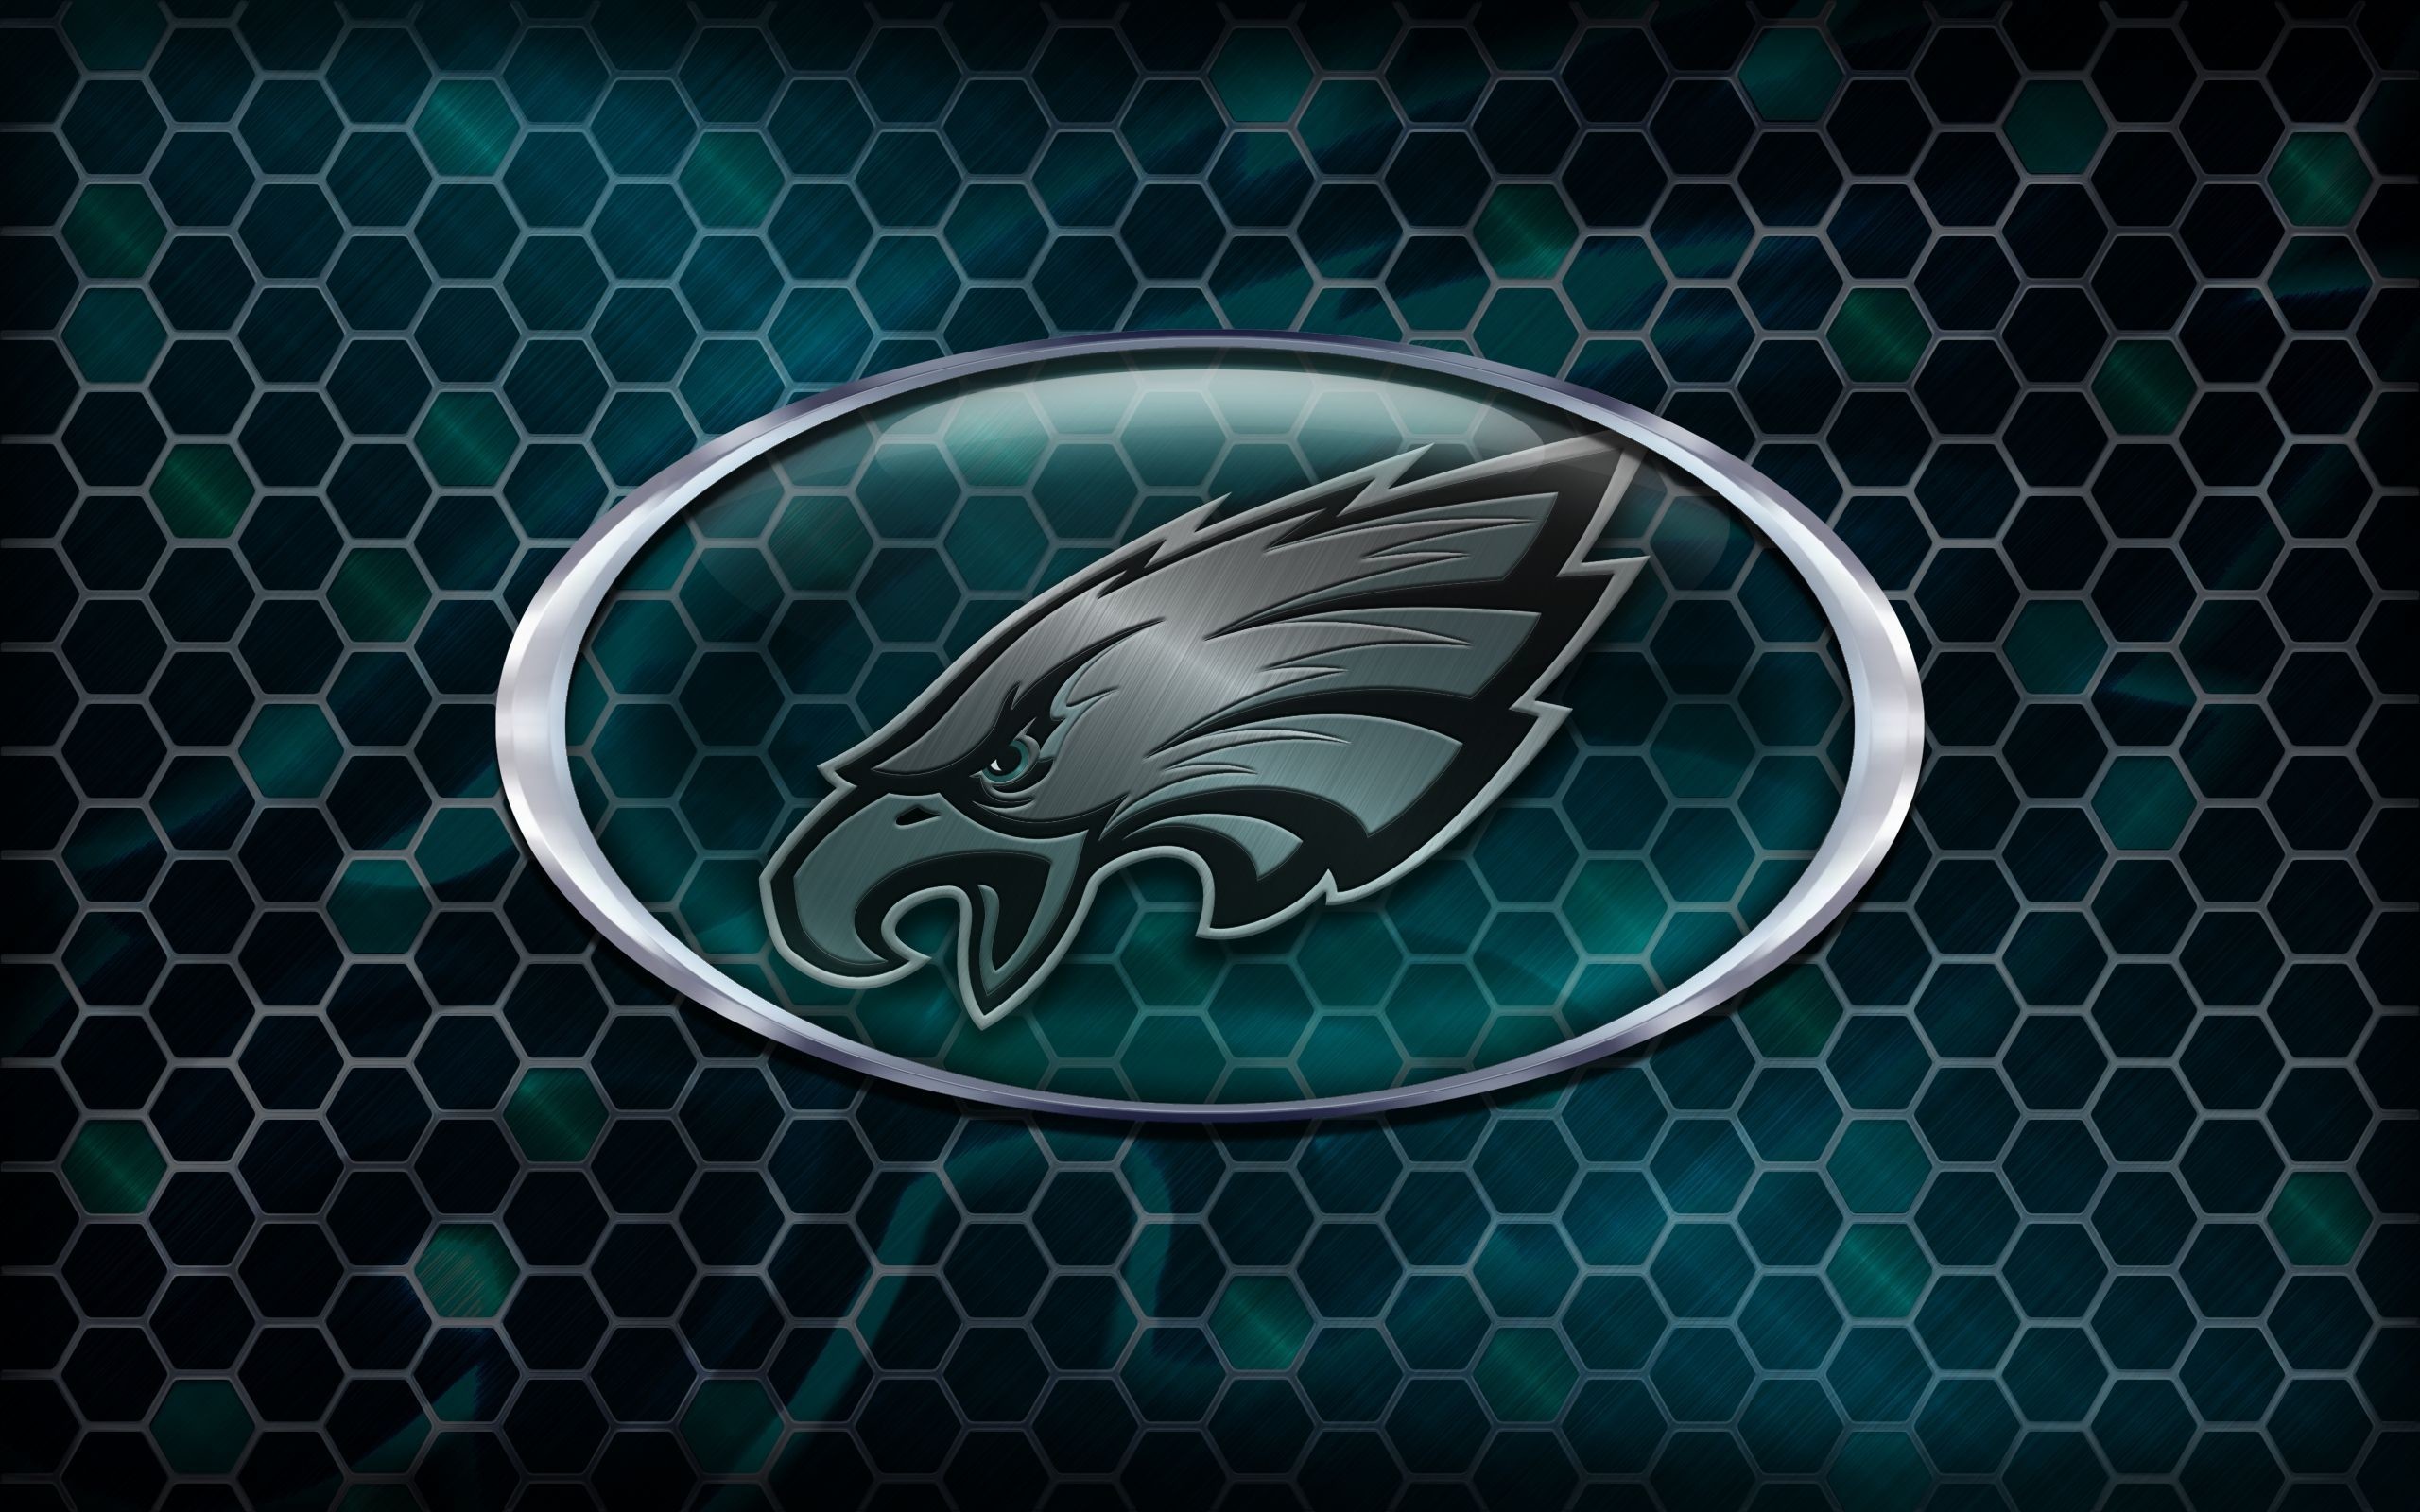 2560x1600 Philadelphia Eagles 2014 NFL Logo Wallpaper